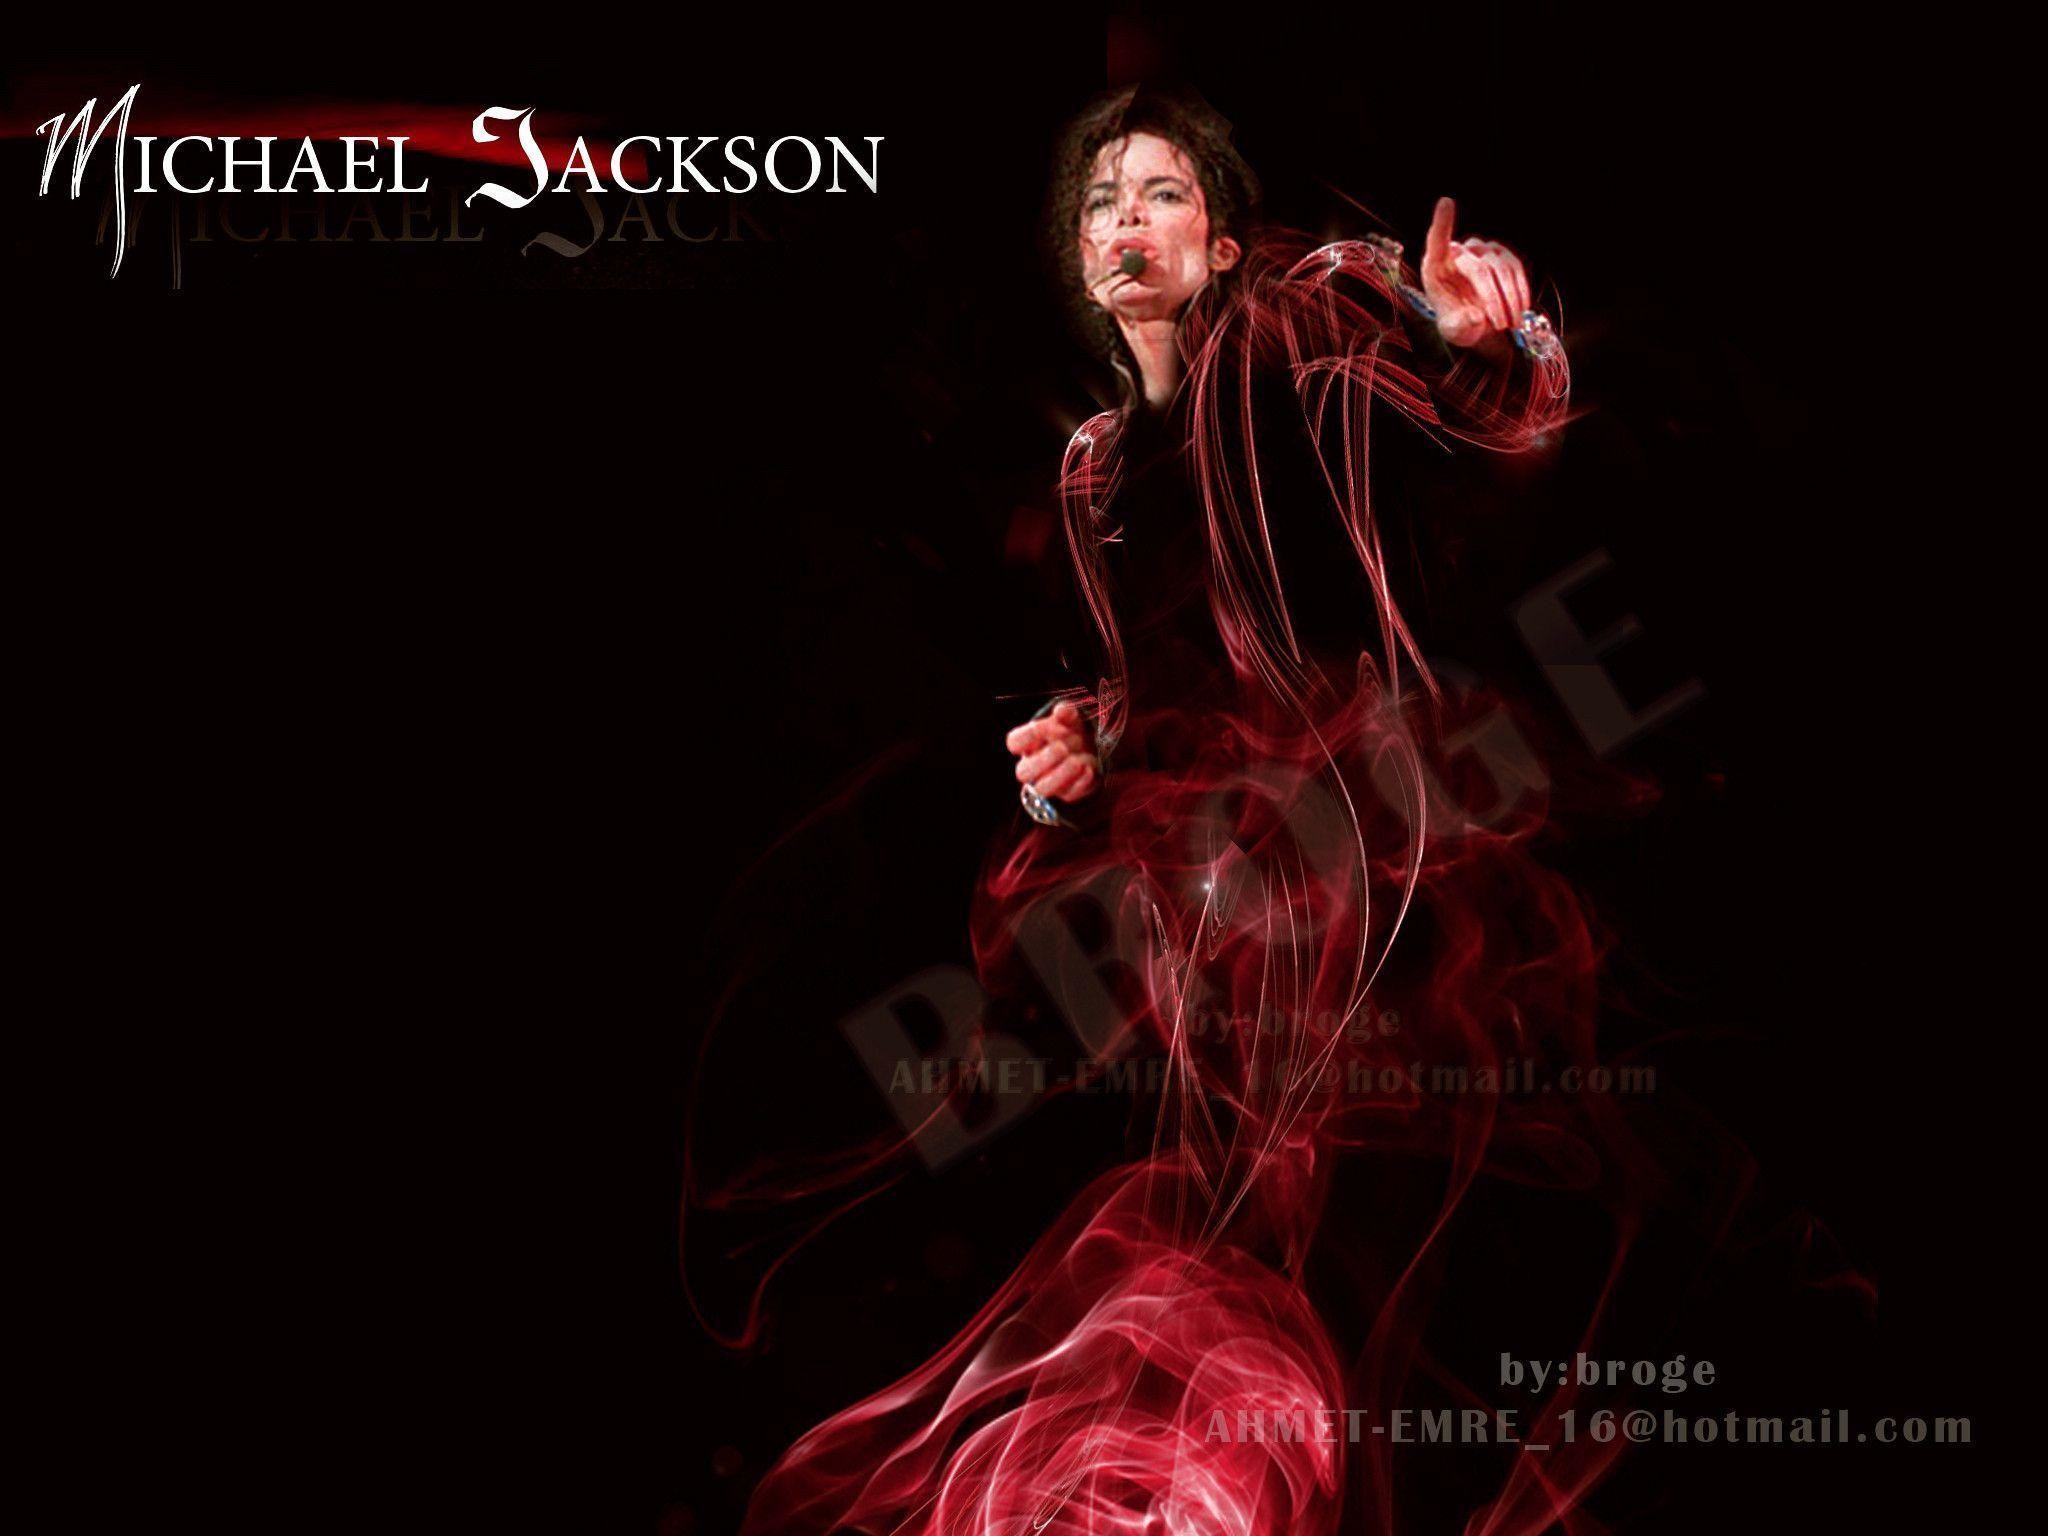 2048x1536 michael jackson - Michael Jackson Wallpaper (12772149) - Fanpop